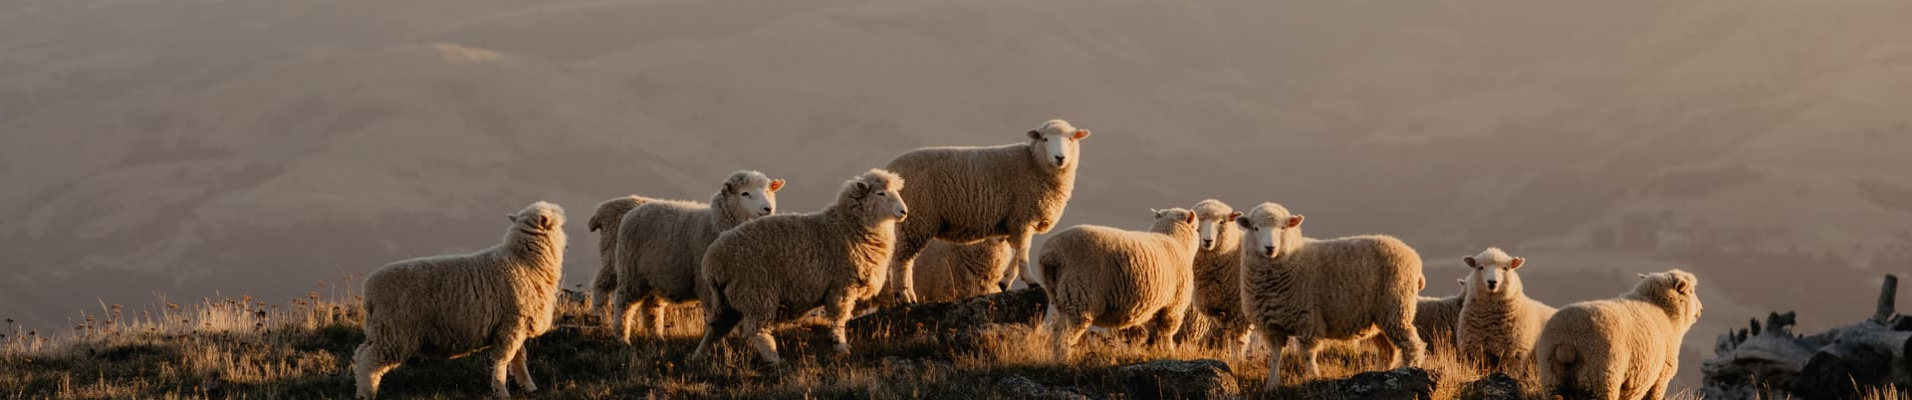 moutons-nouvelle-zelande